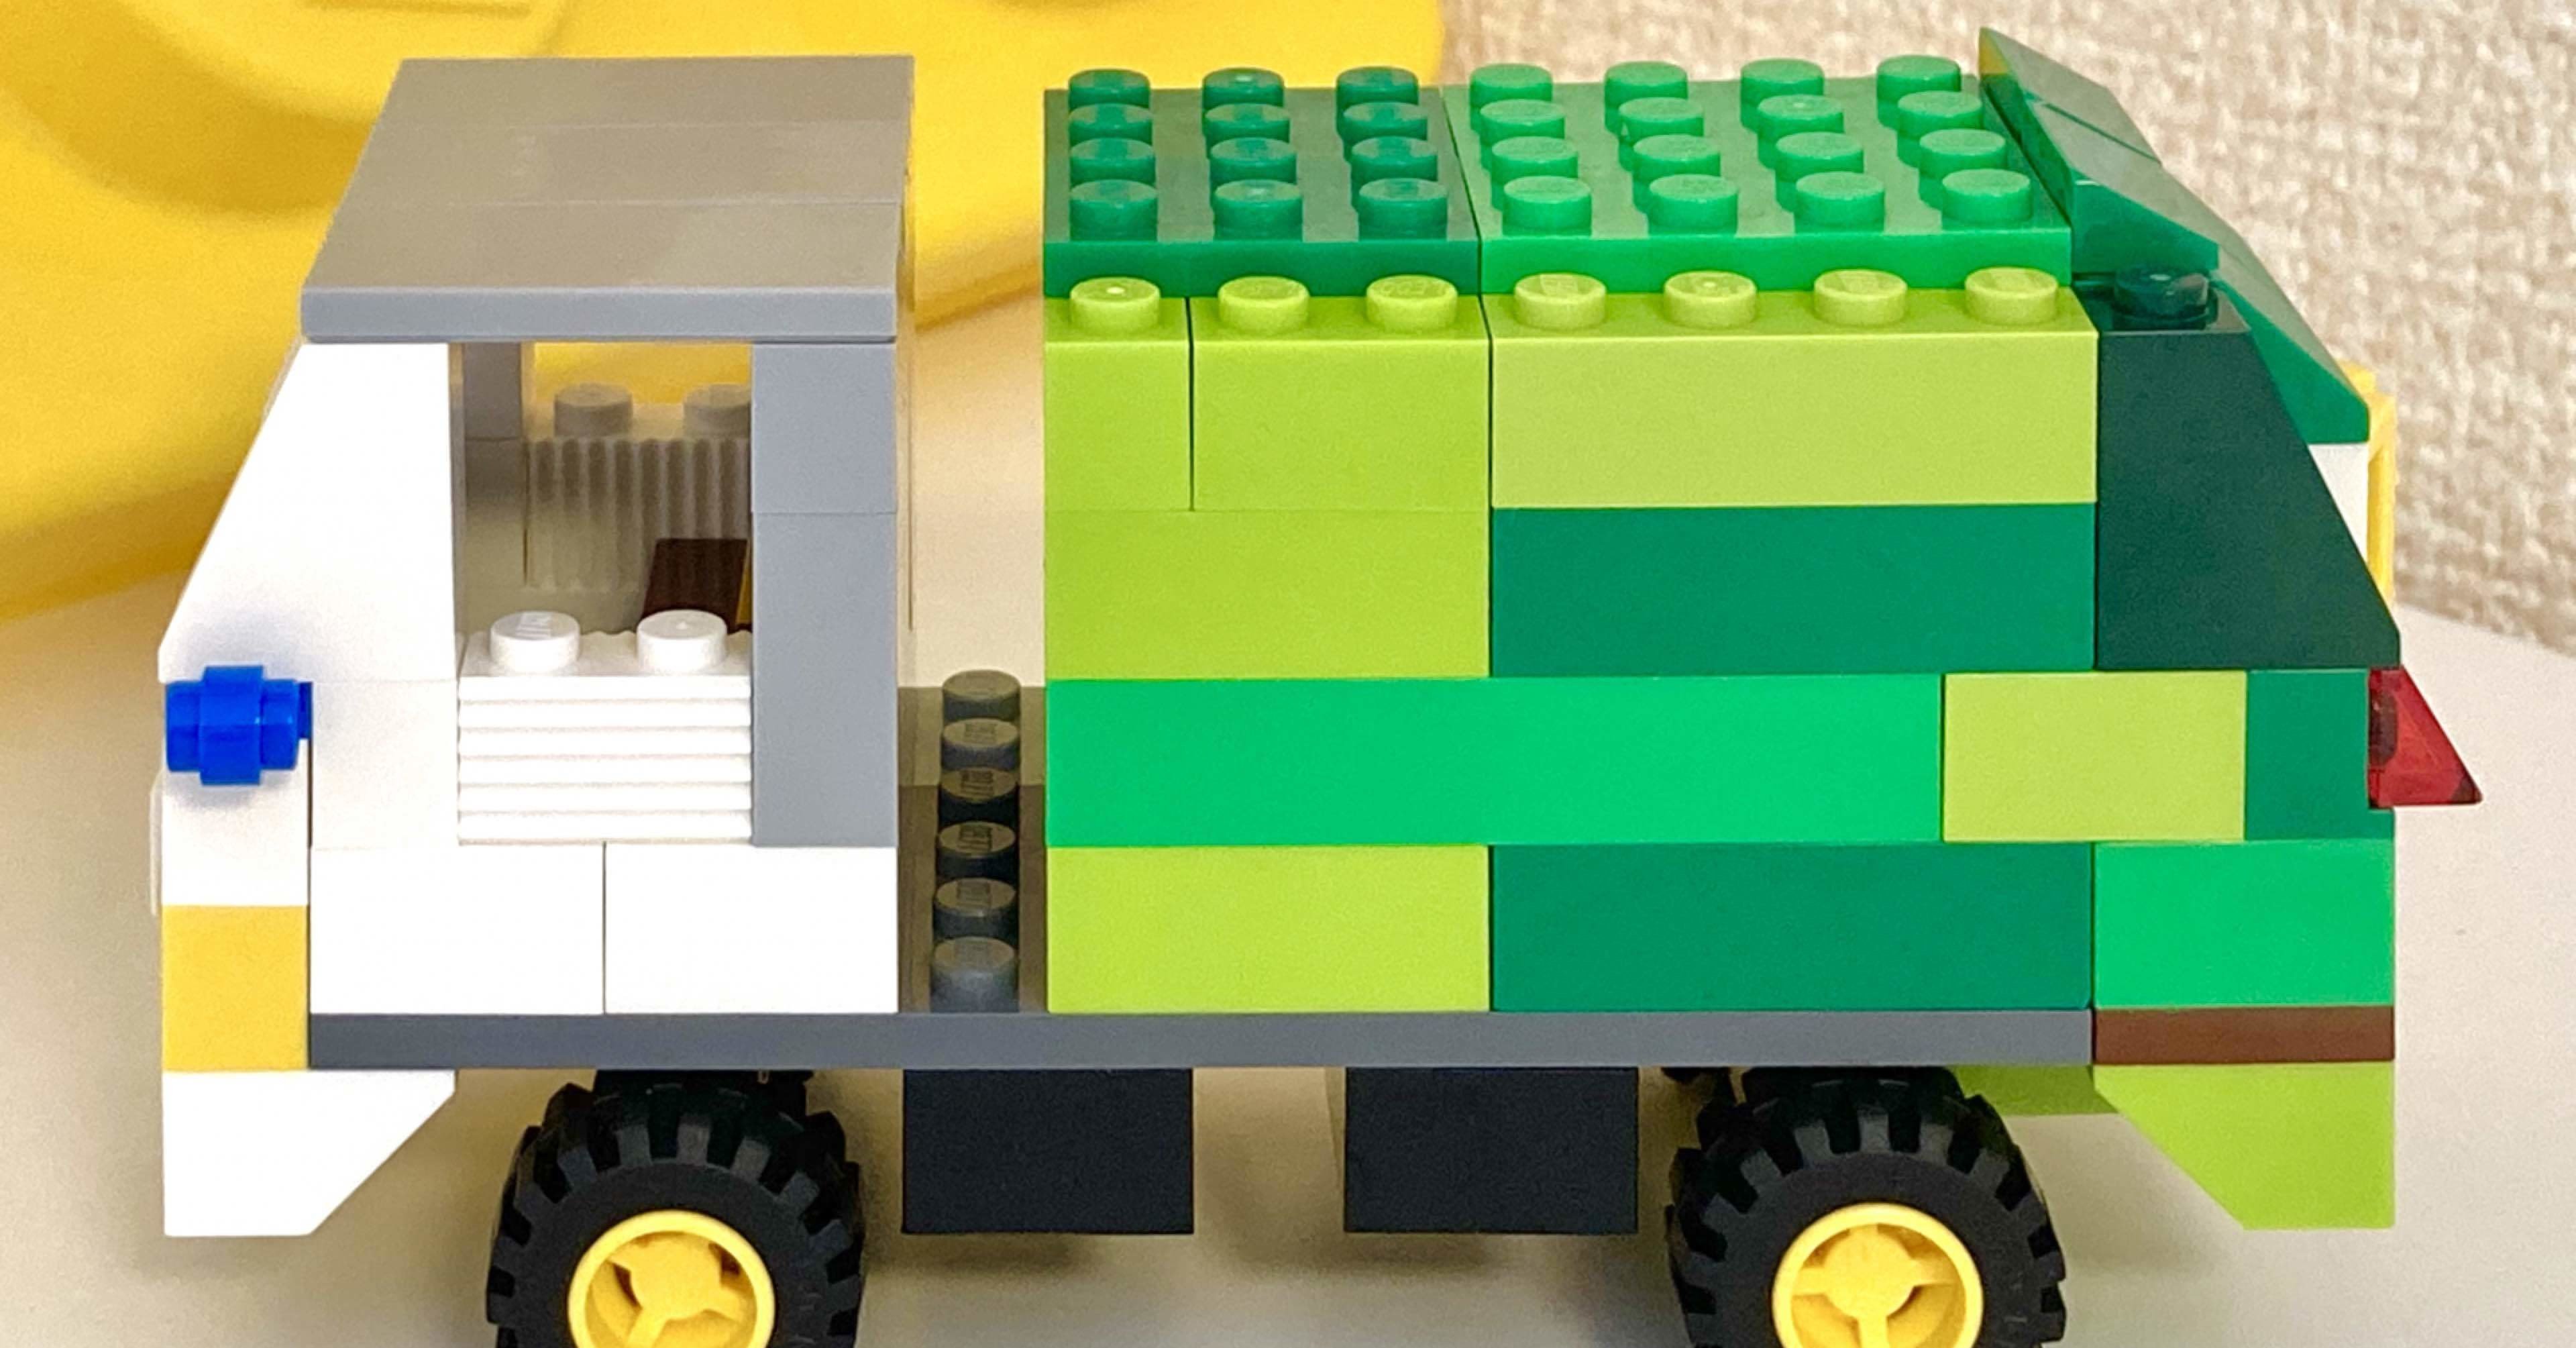 レゴ作り方1 黄色のアイデアボックス だけで作る みどりのゴミ収集車 あんり Note